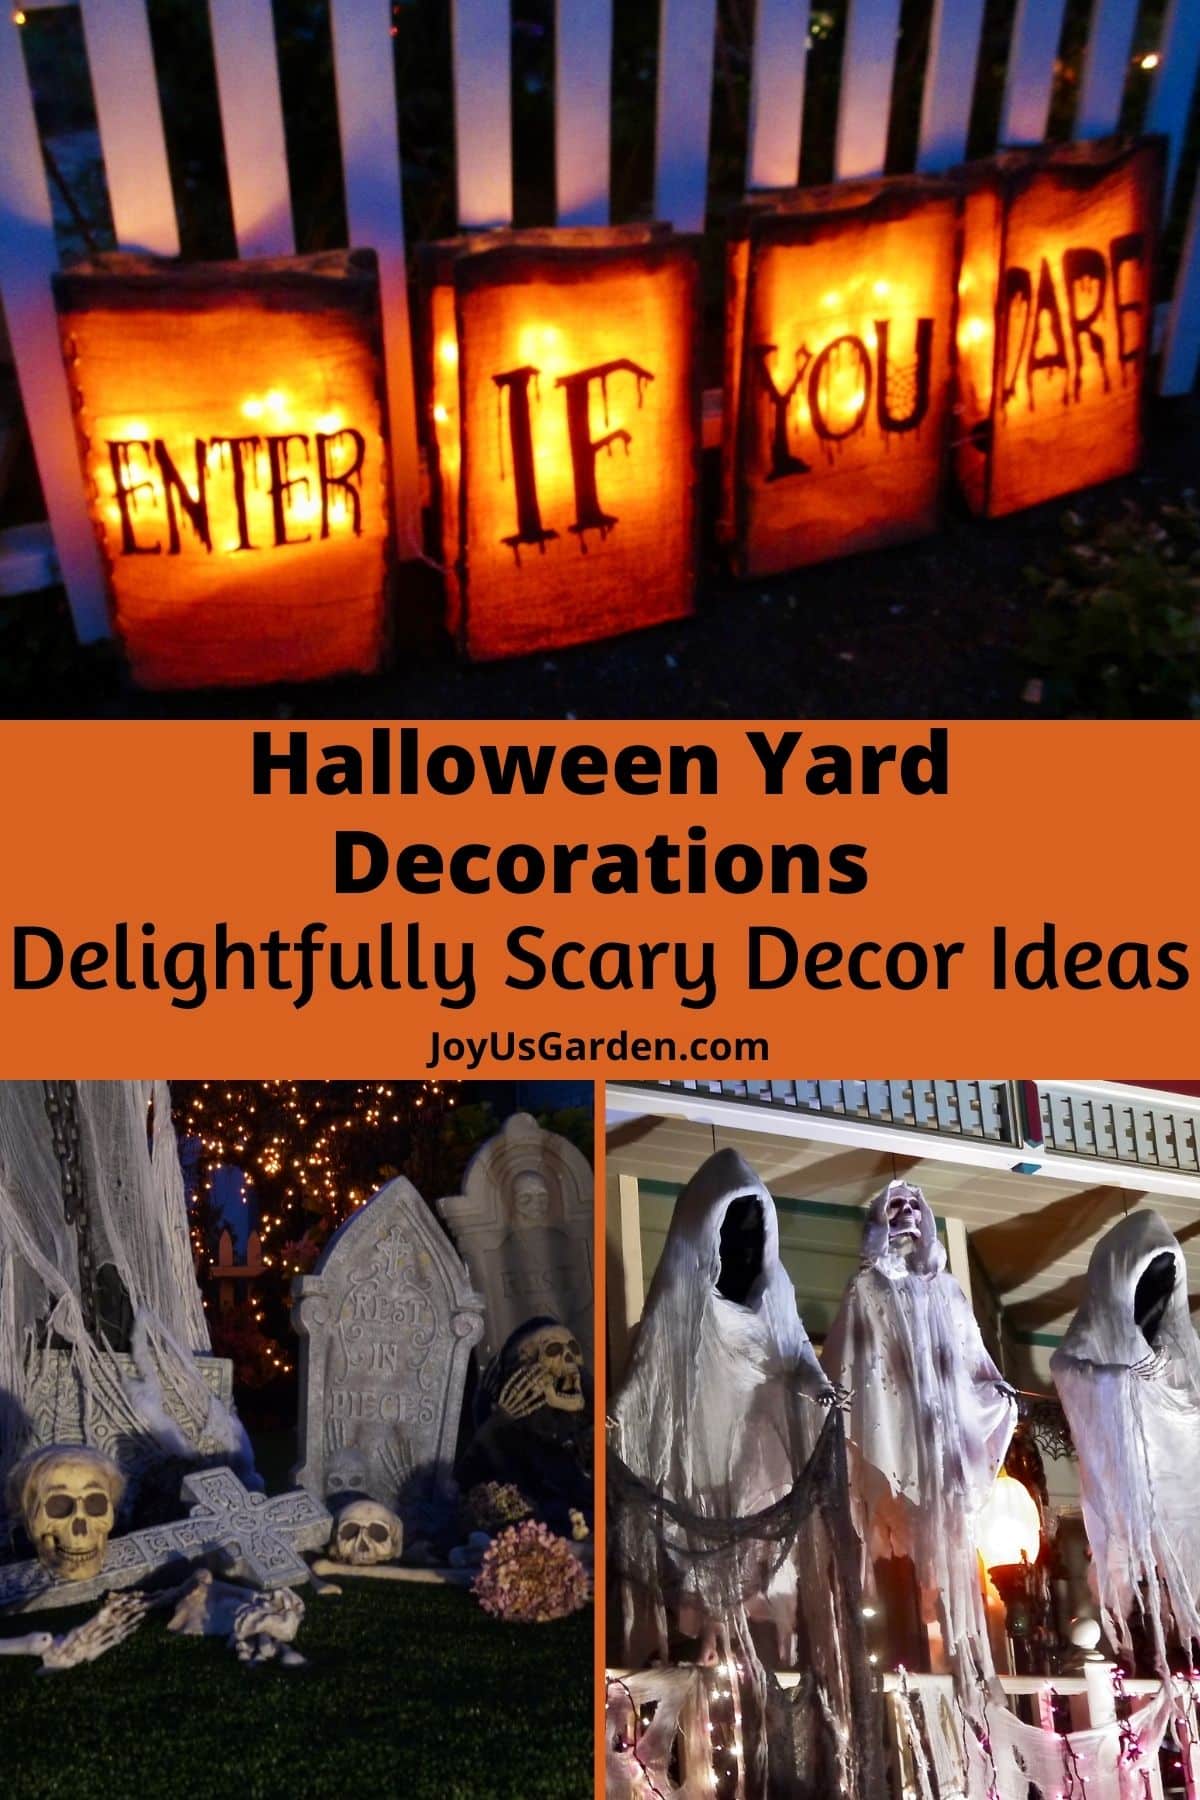  Decorazioni per il giardino di Halloween: idee di decorazione deliziosamente spaventose